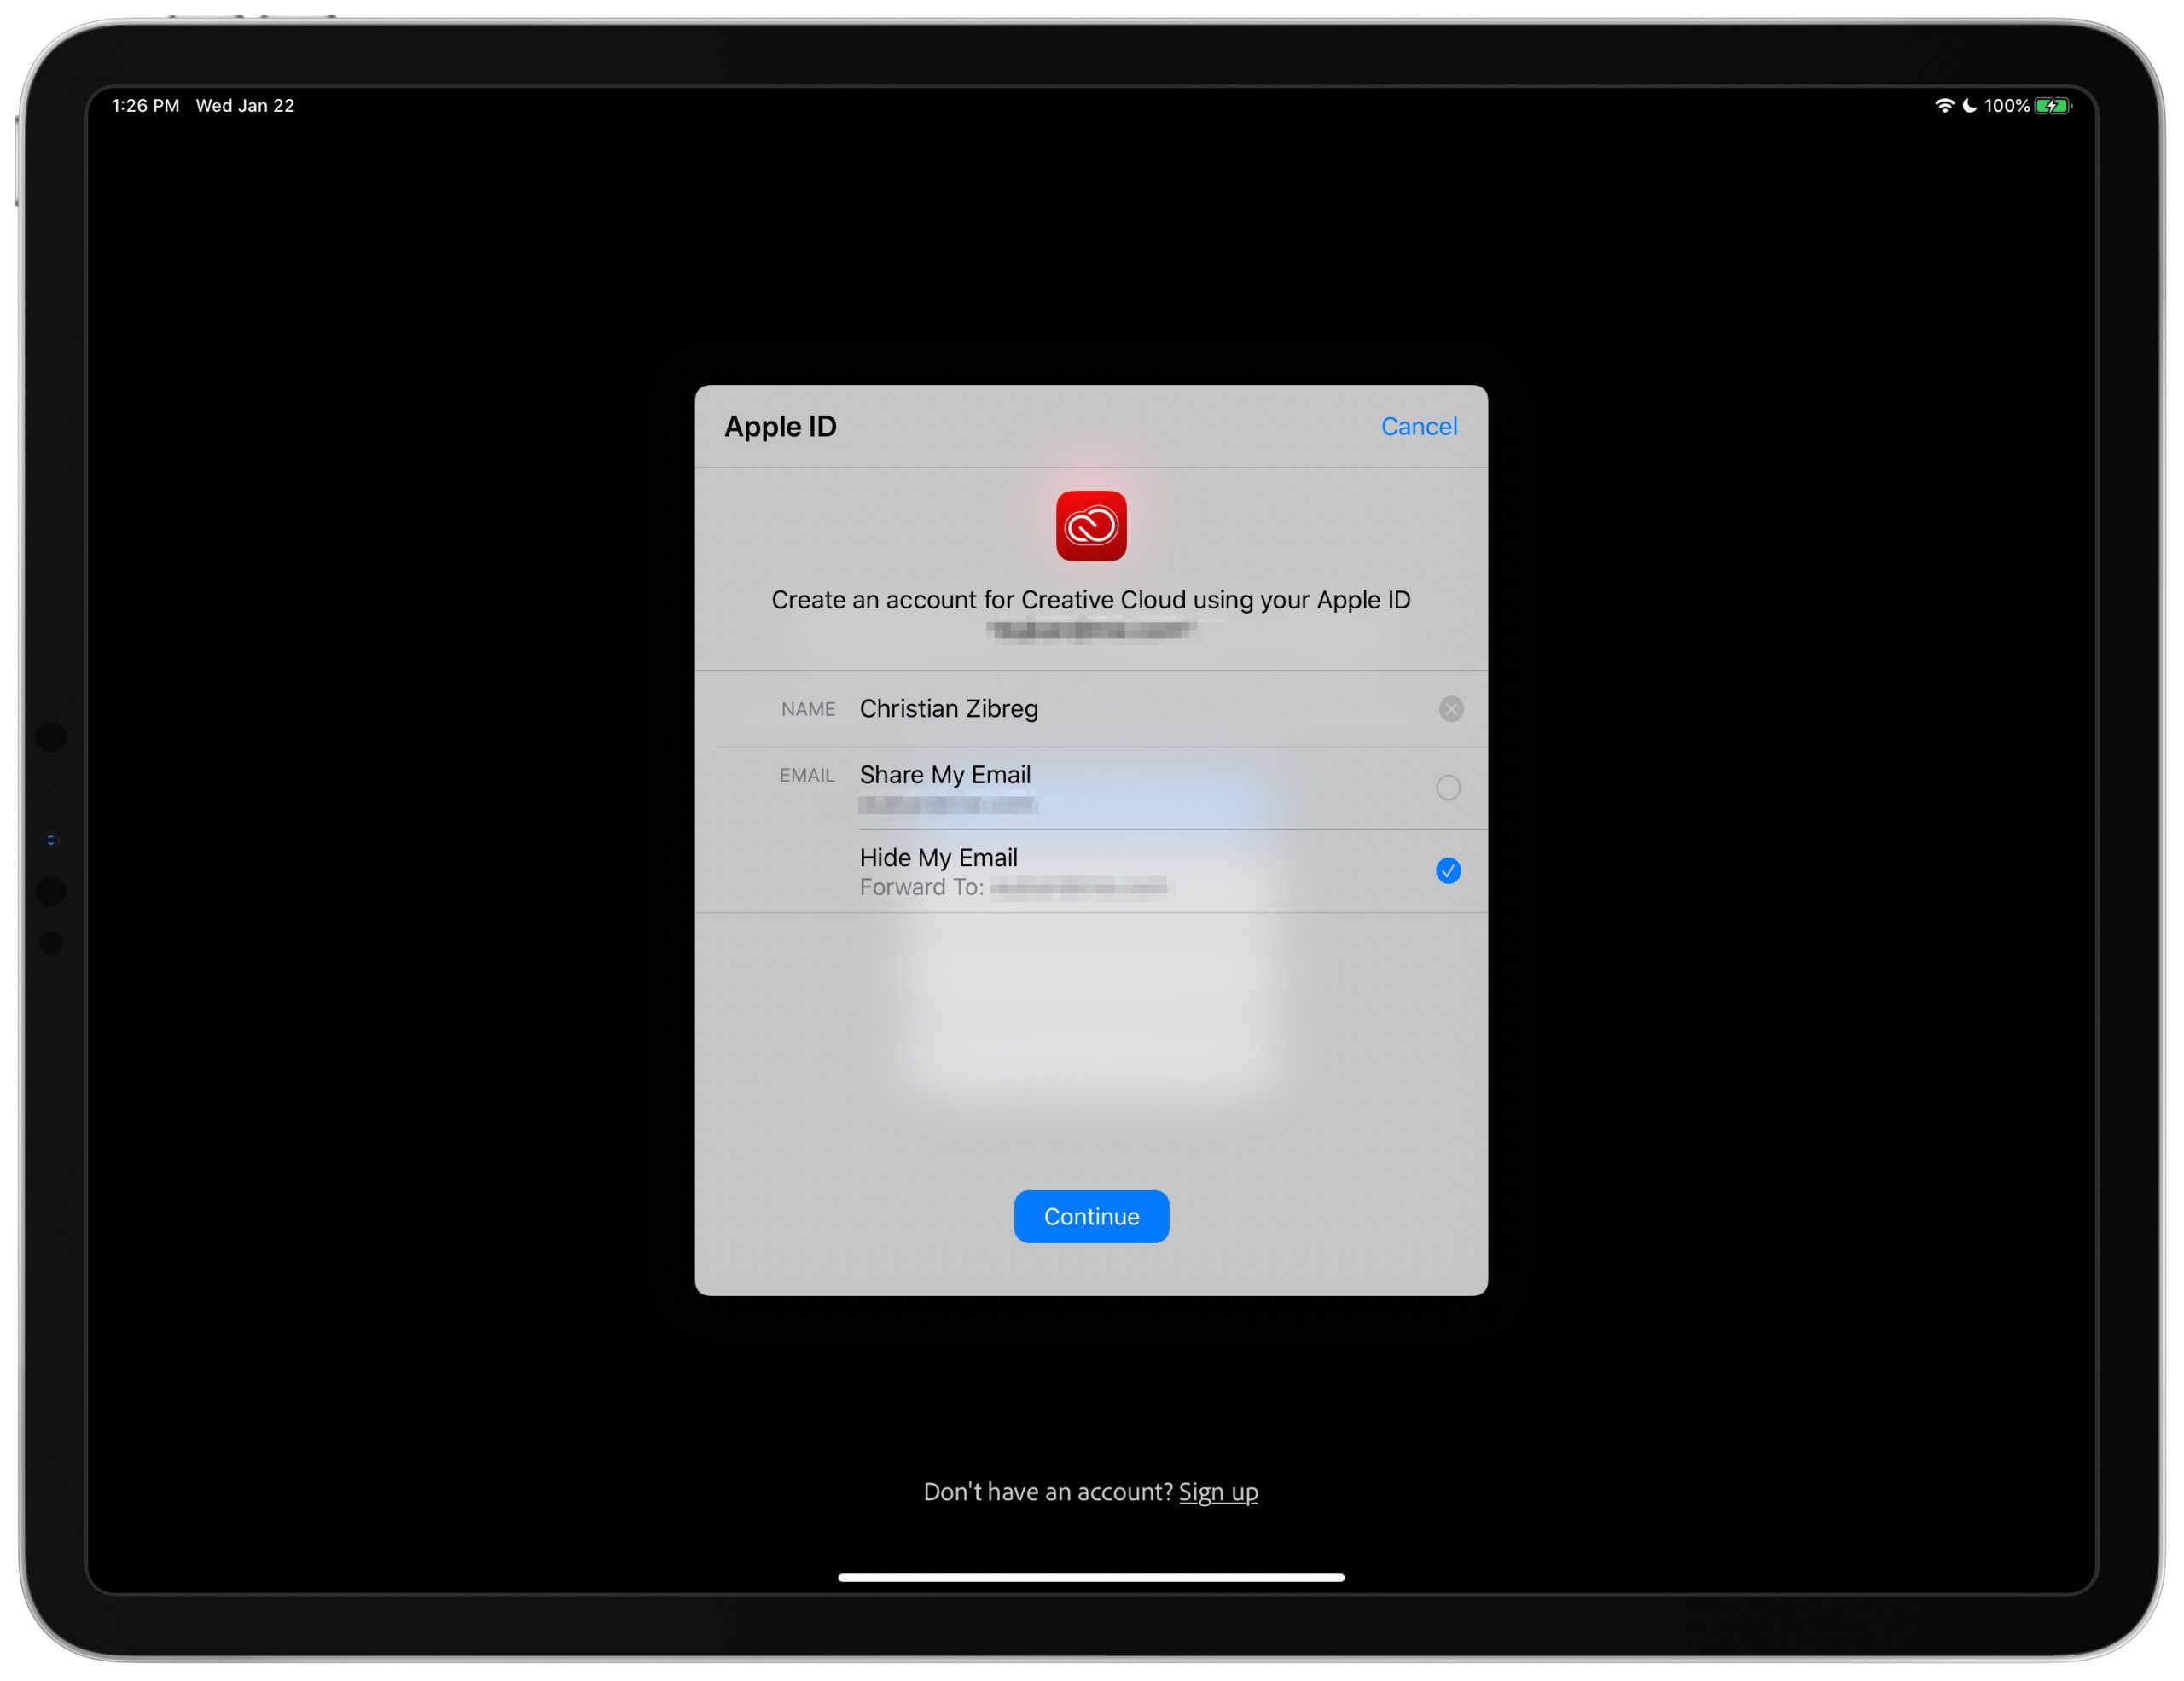 Bây giờ bạn có thể truy cập Adobe Creative Cloud thông qua thông tin đăng nhập để duy trì quyền riêng tư với Apple sự lựa chọn 3